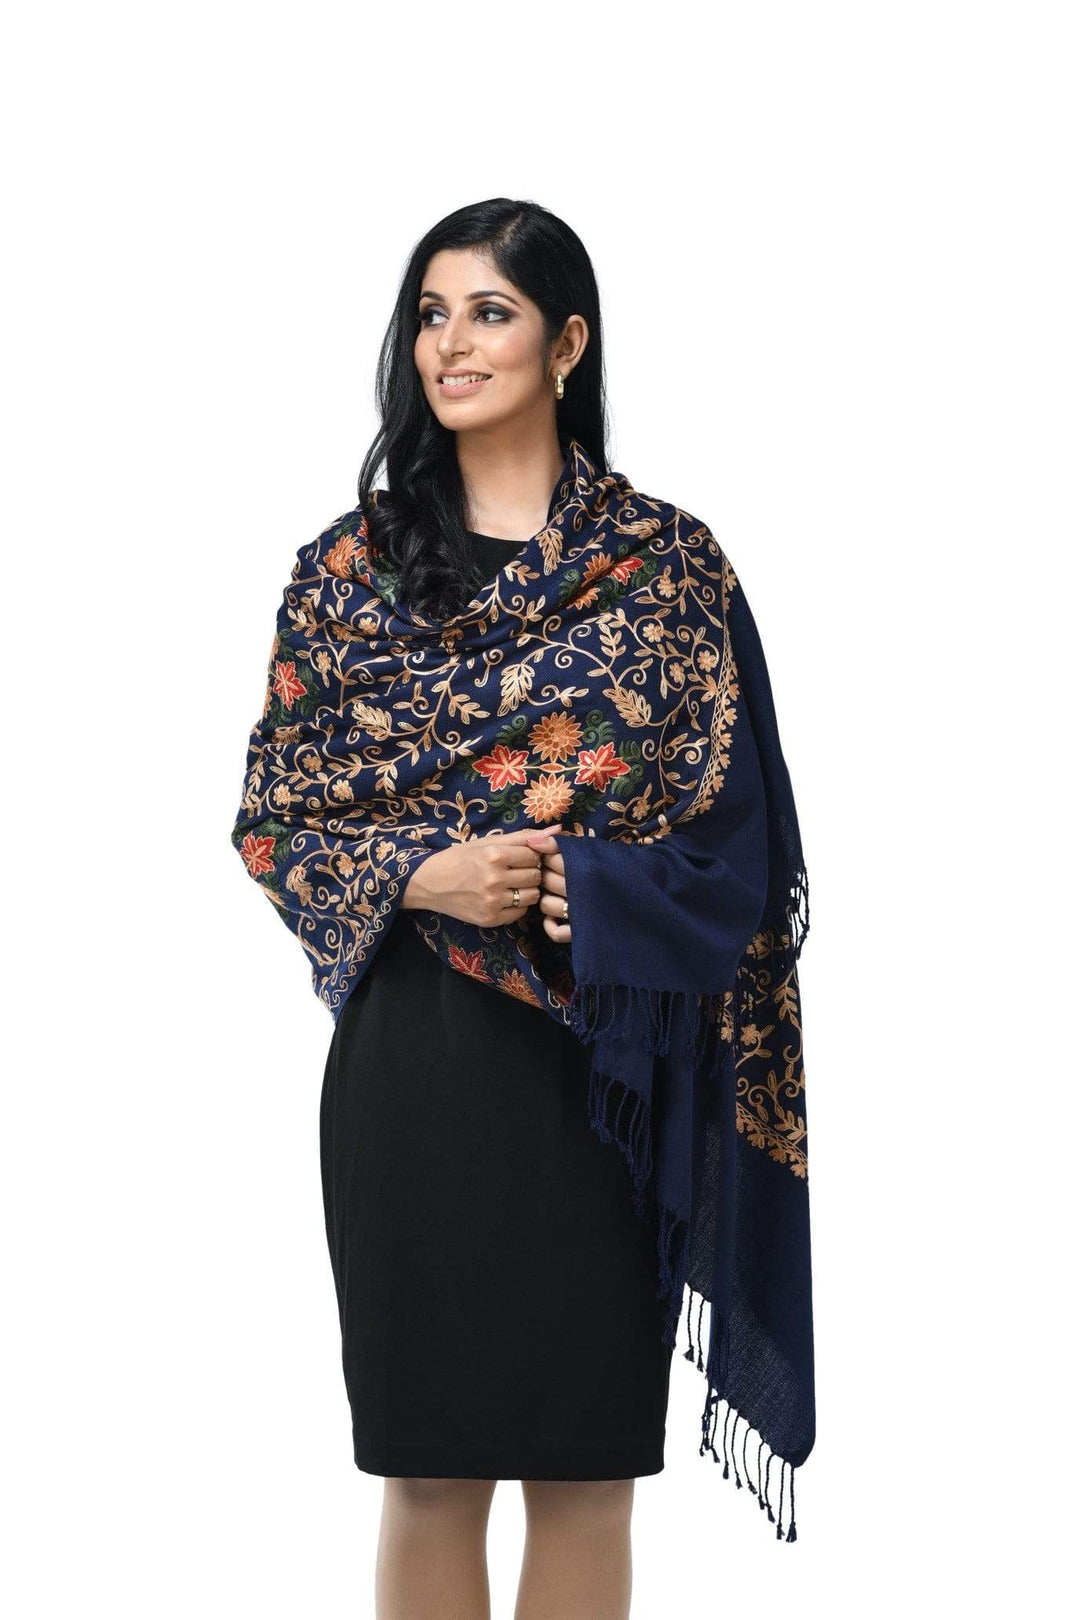 Pashwool 70x200 Pashwool Womens Kashmiri Embroidery Stole, Soft and Warm, Woollen Stole, Navy Blue